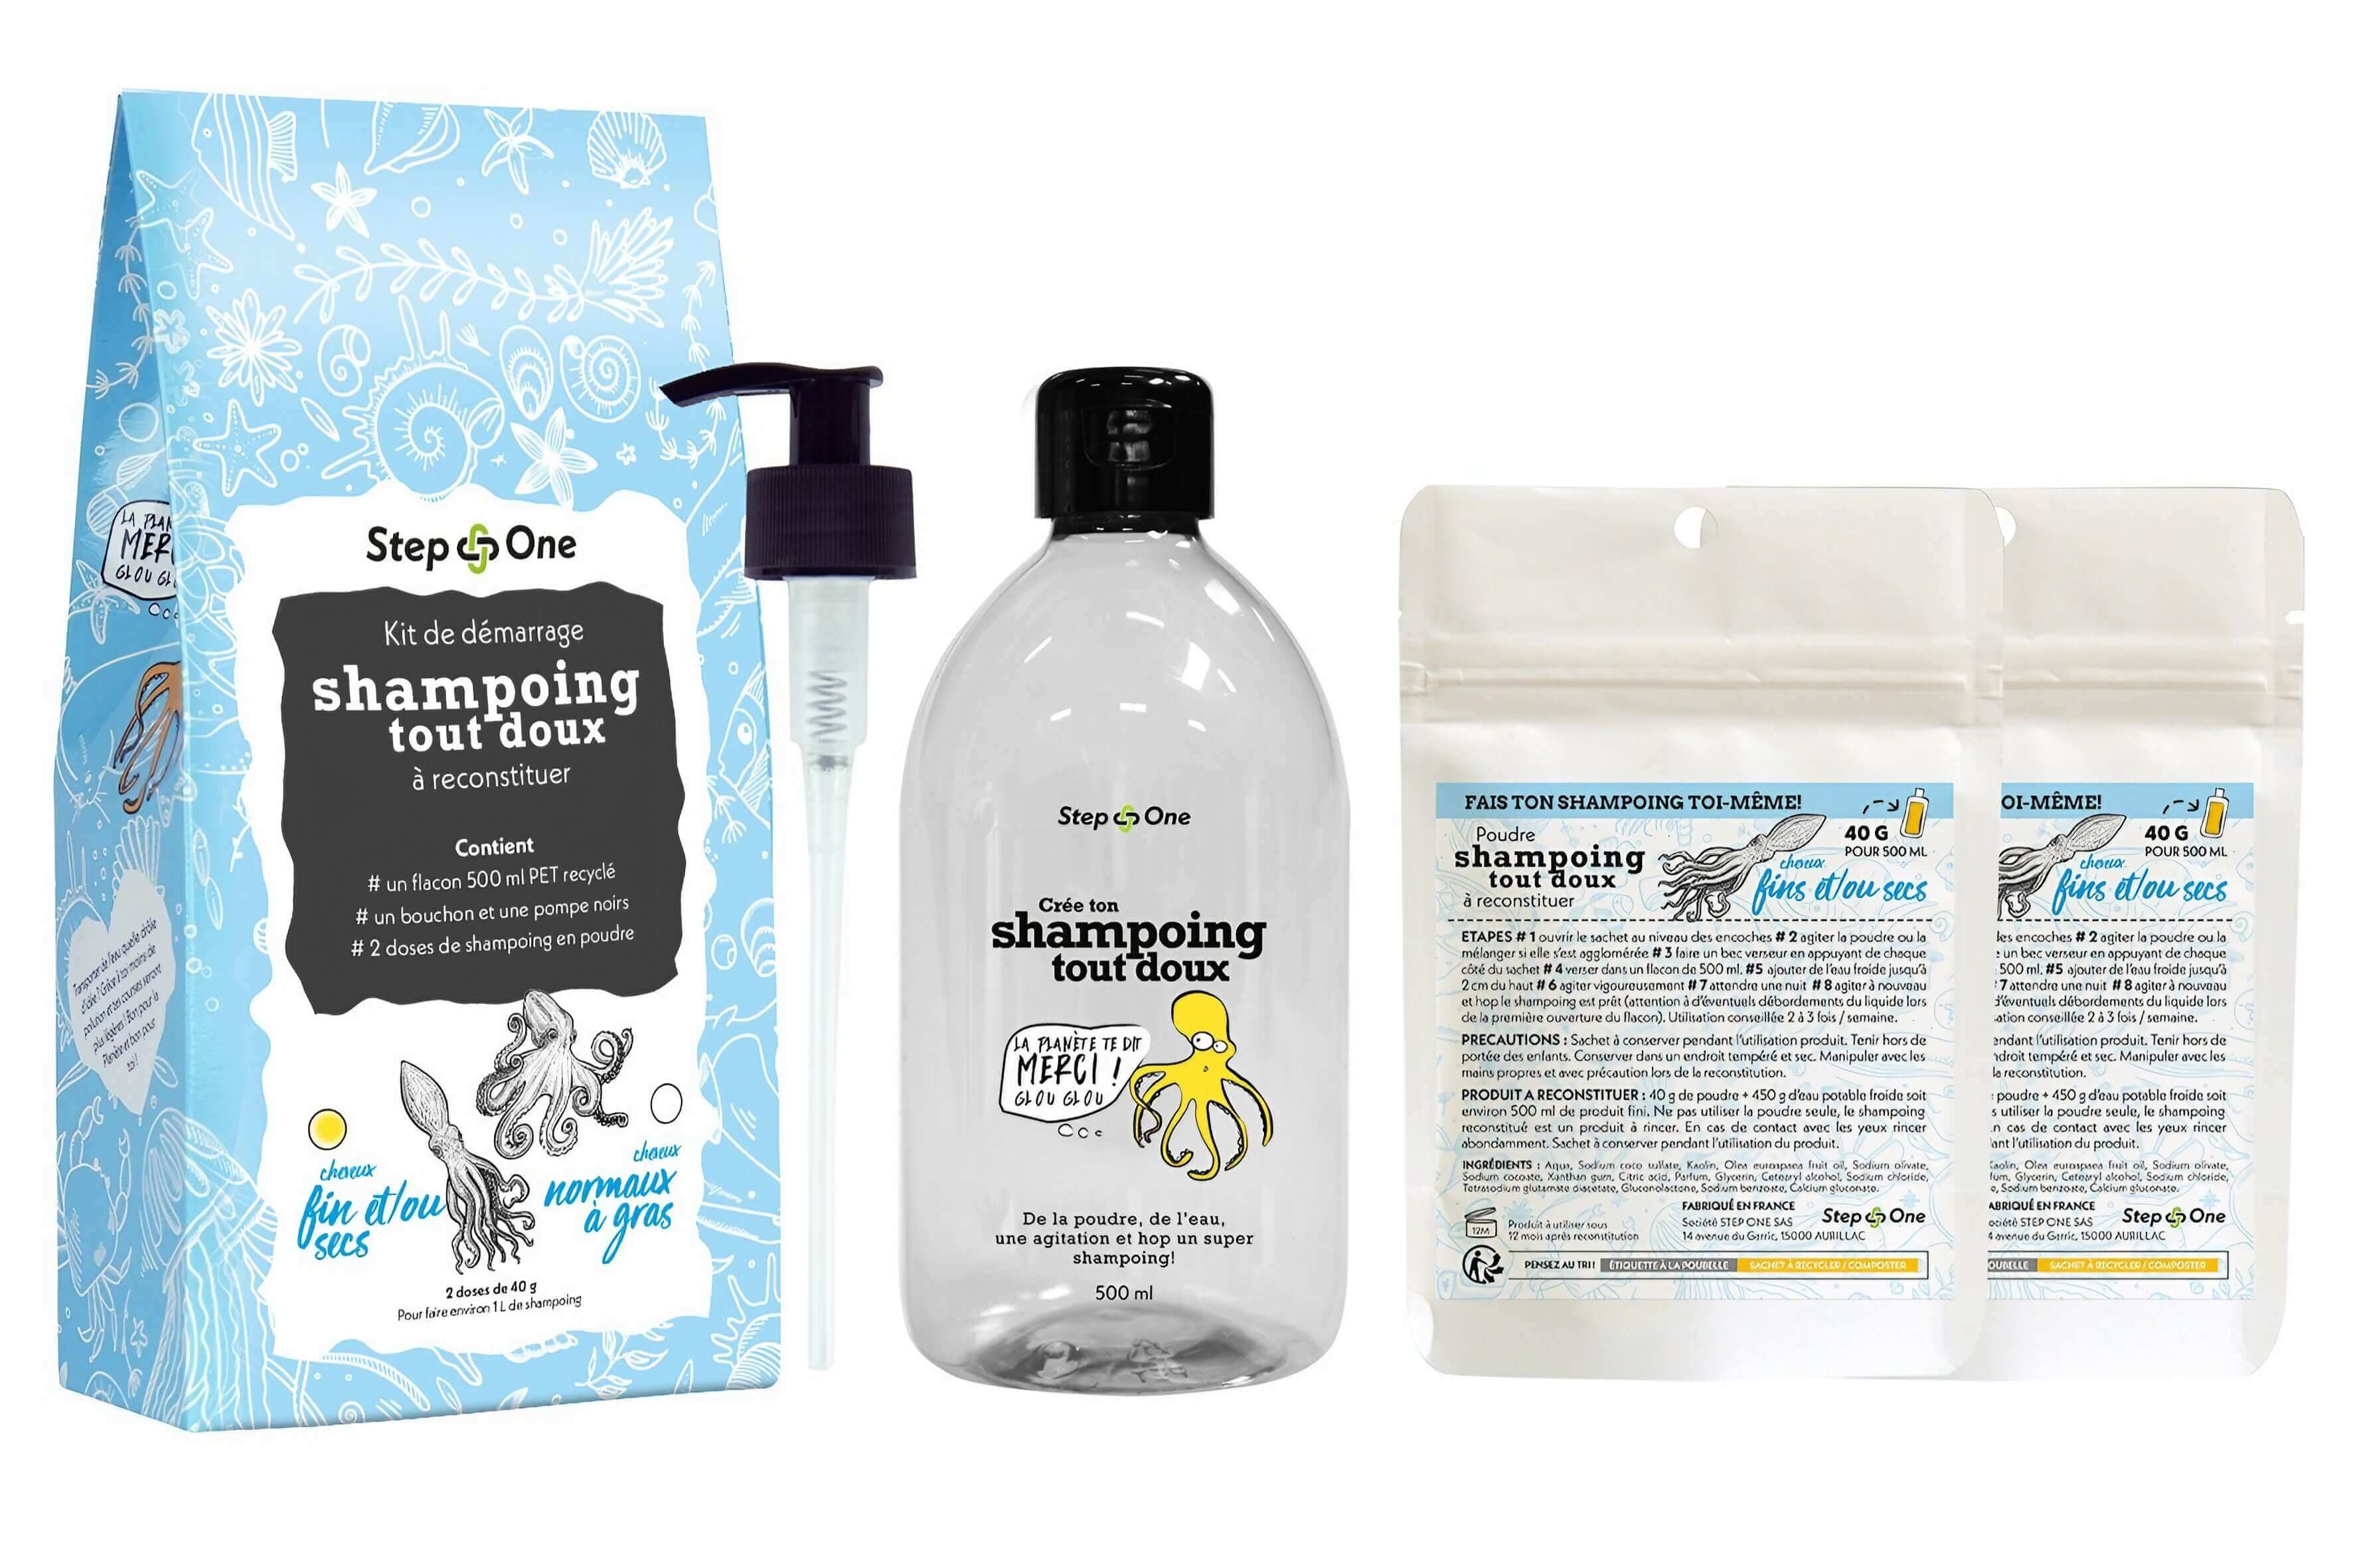 Kit de démarrage pour shampoing bio adapté aux cheveux secs et fins, présentant une démarche zéro déchet et écologique